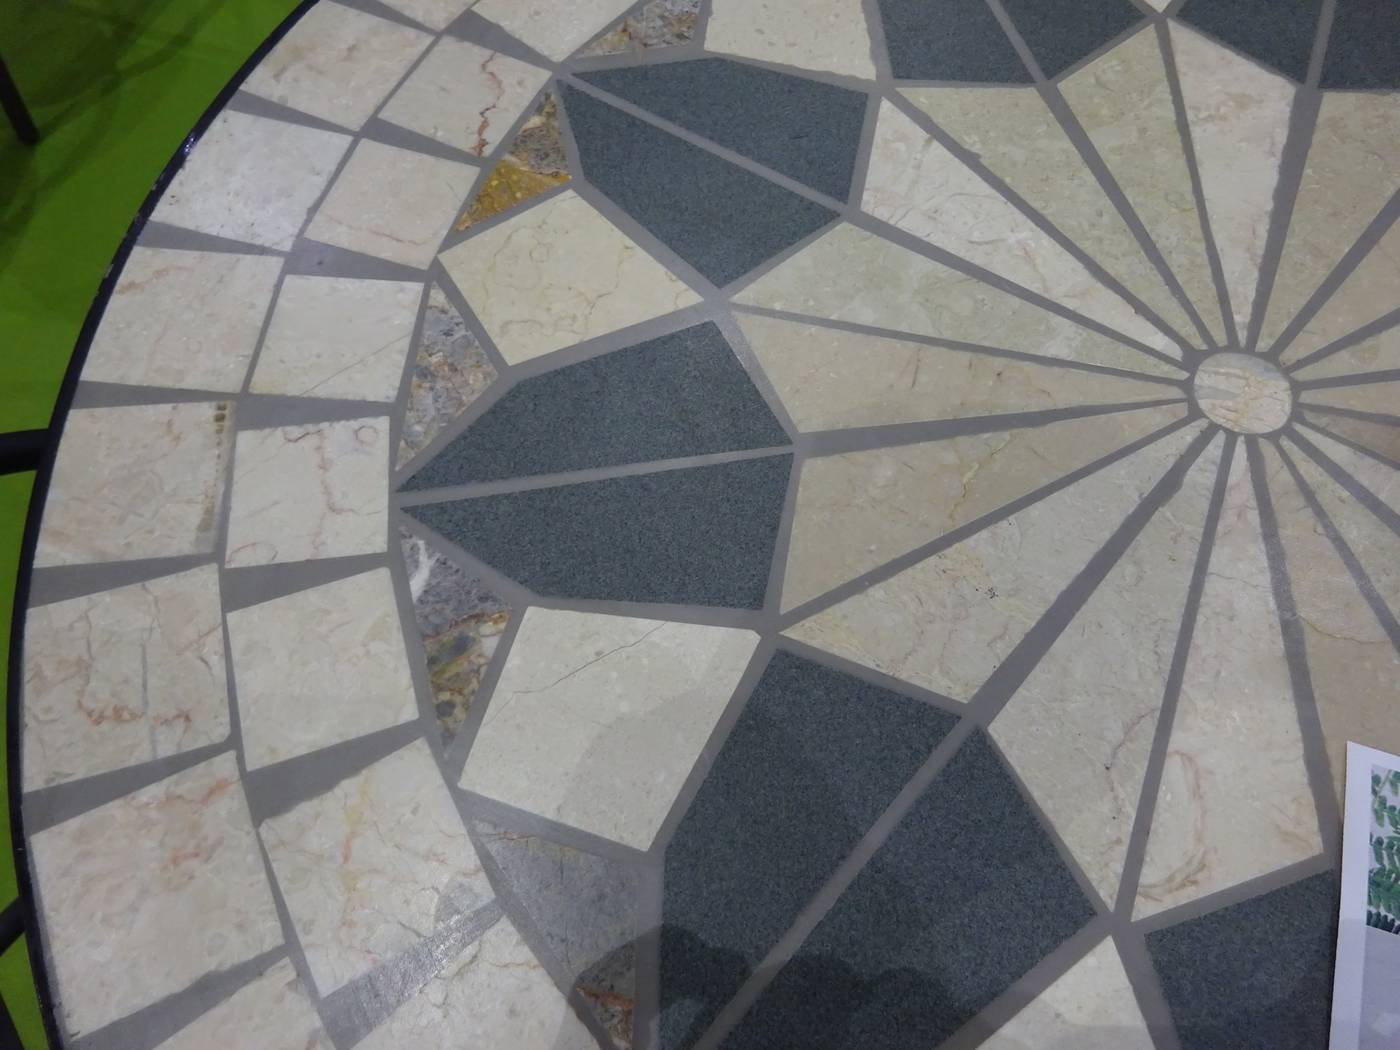 Set Mosaico Shifa-Ampurias 70-2 - Conjunto para jardín de forja color antracita: 1 mesa con panel mosaico + 2 sillones de ratán sintético + 2 cojines